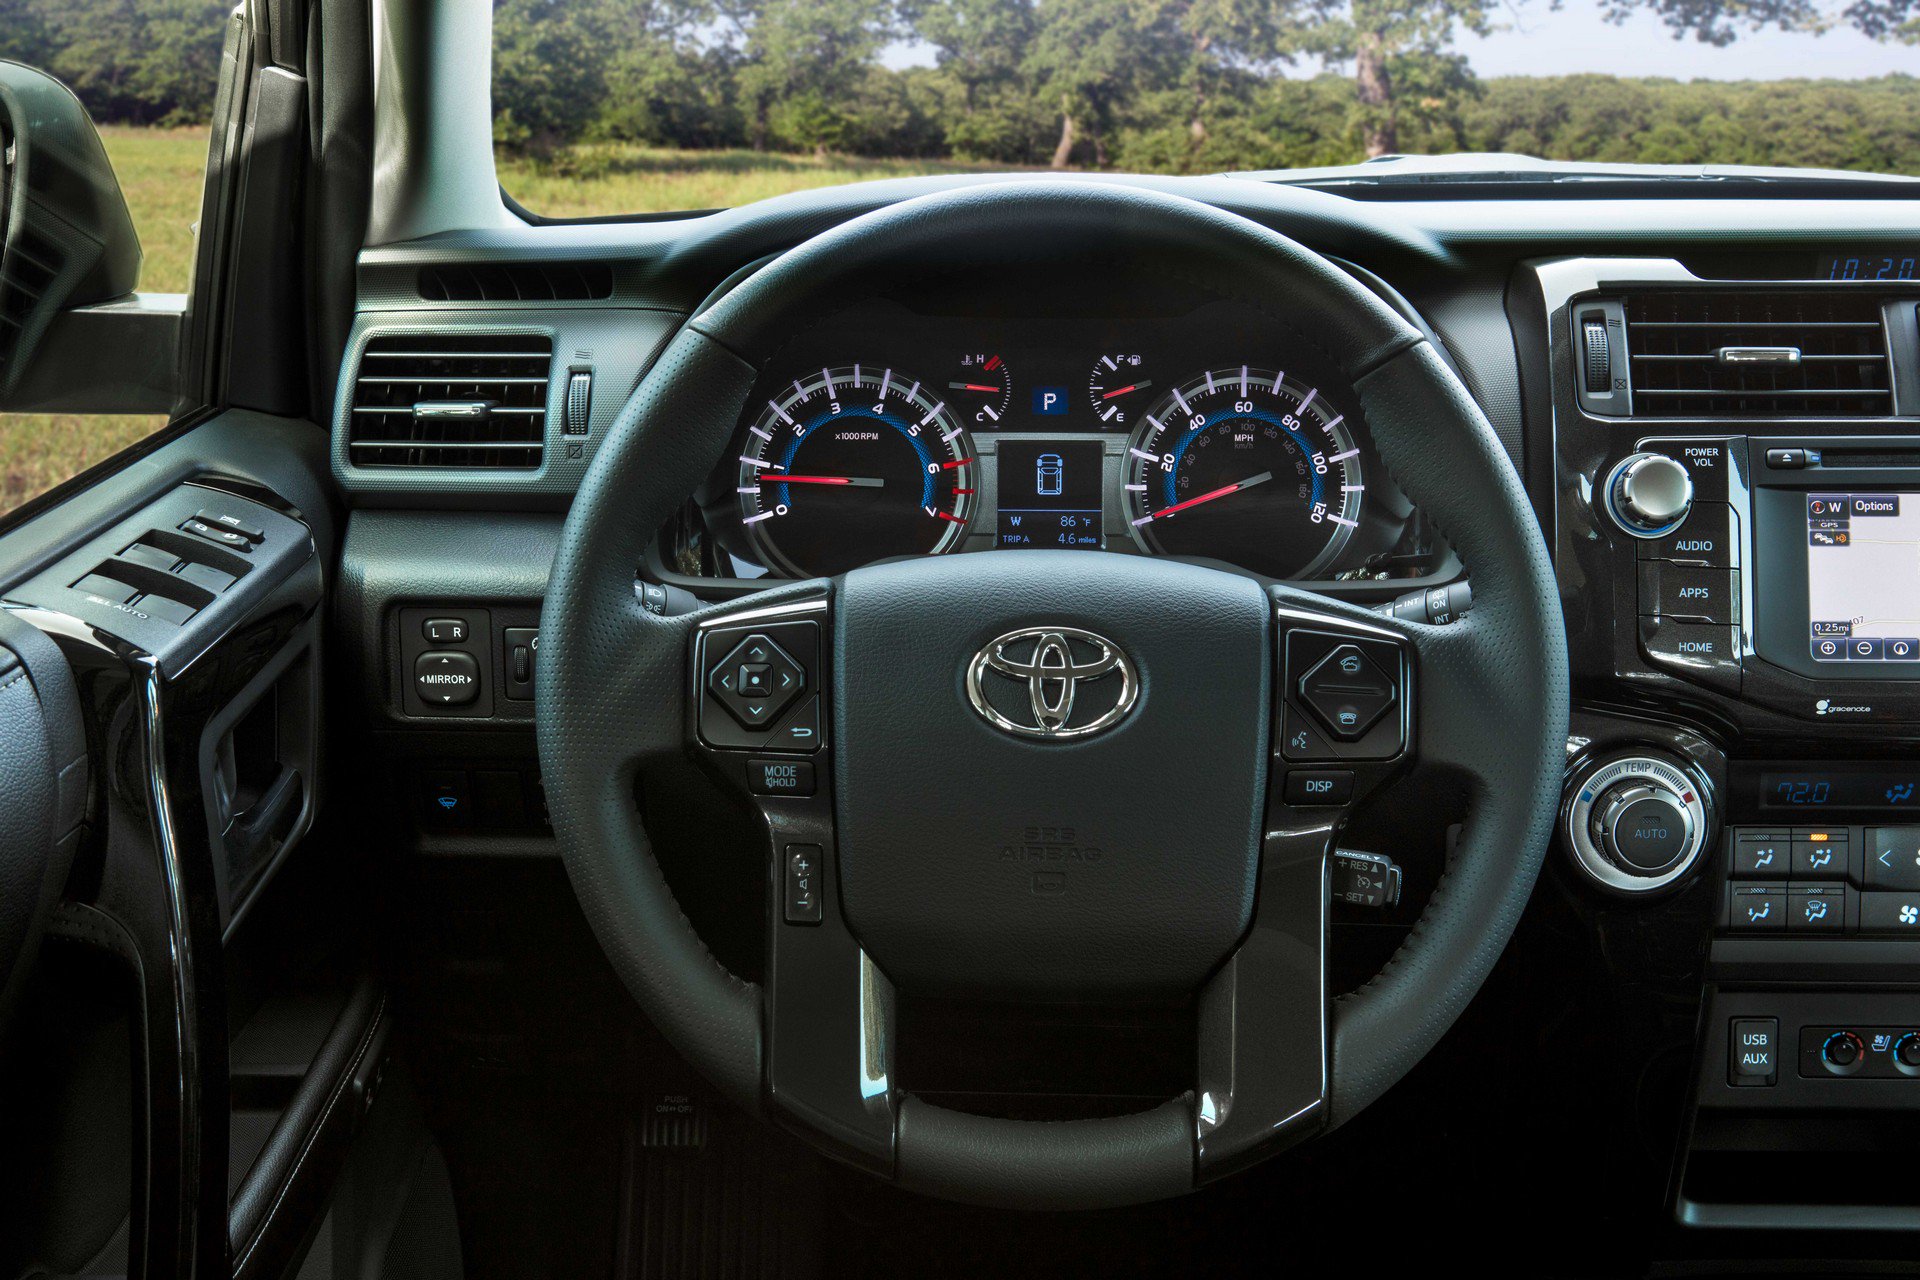 Toyota 4Runner thế hệ 2019 bổ sung phiên bản mới: hiện đại và mạnh mẽ hơn - ảnh 4